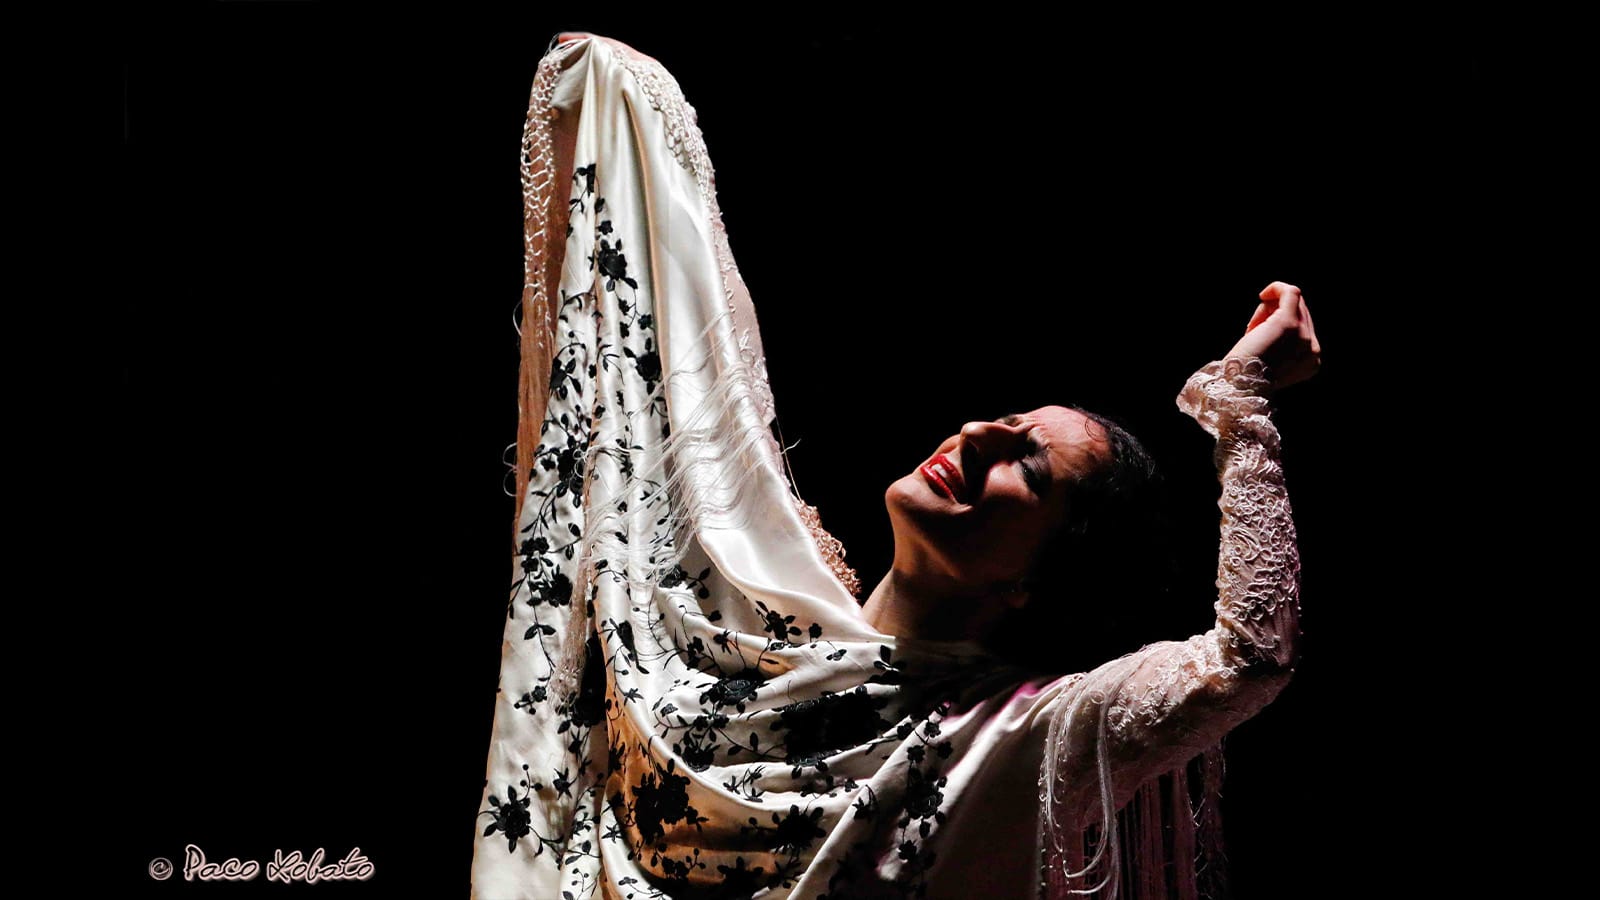 A woman flamenco dancing